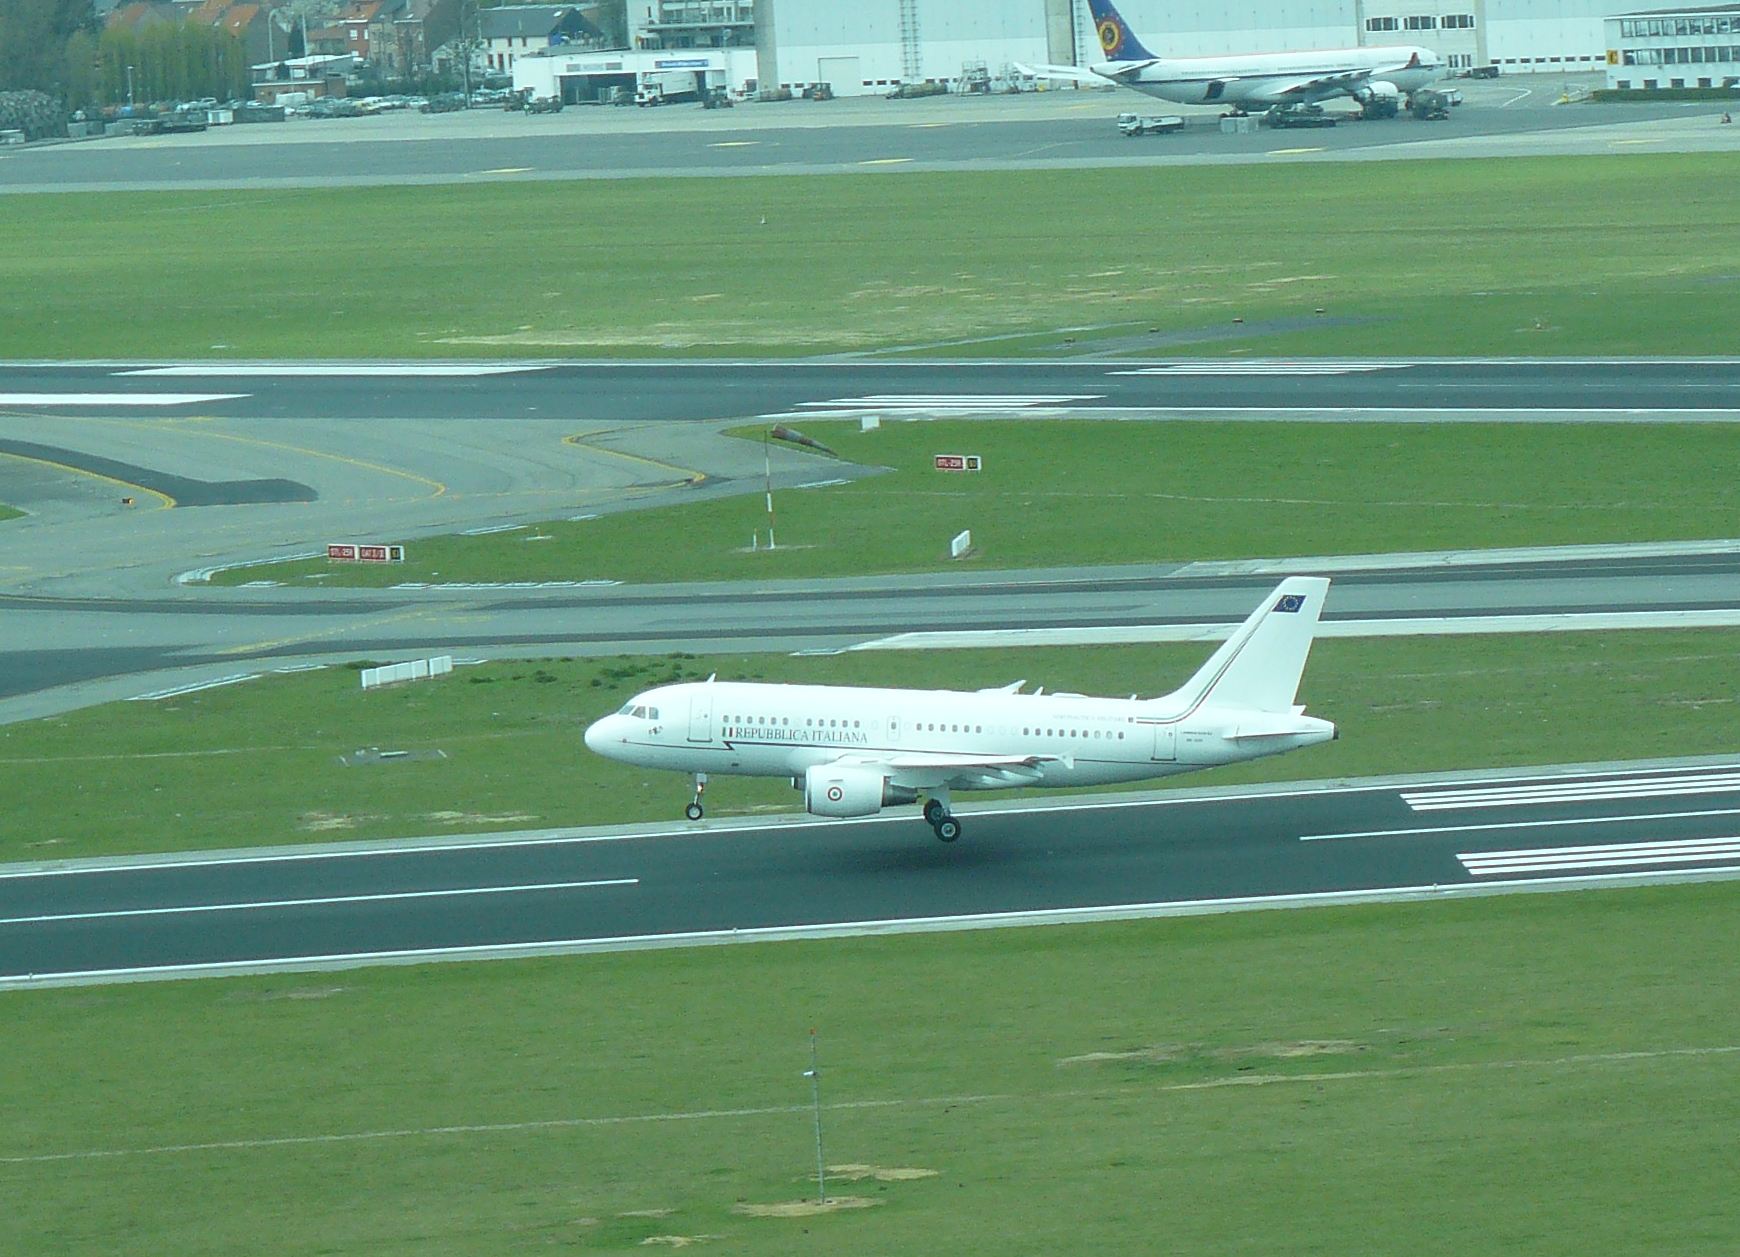 Európa fővárosáben nem ritka a kormánygép, az orosz Il-62-es sajnos a reptér túloldalán parkolt